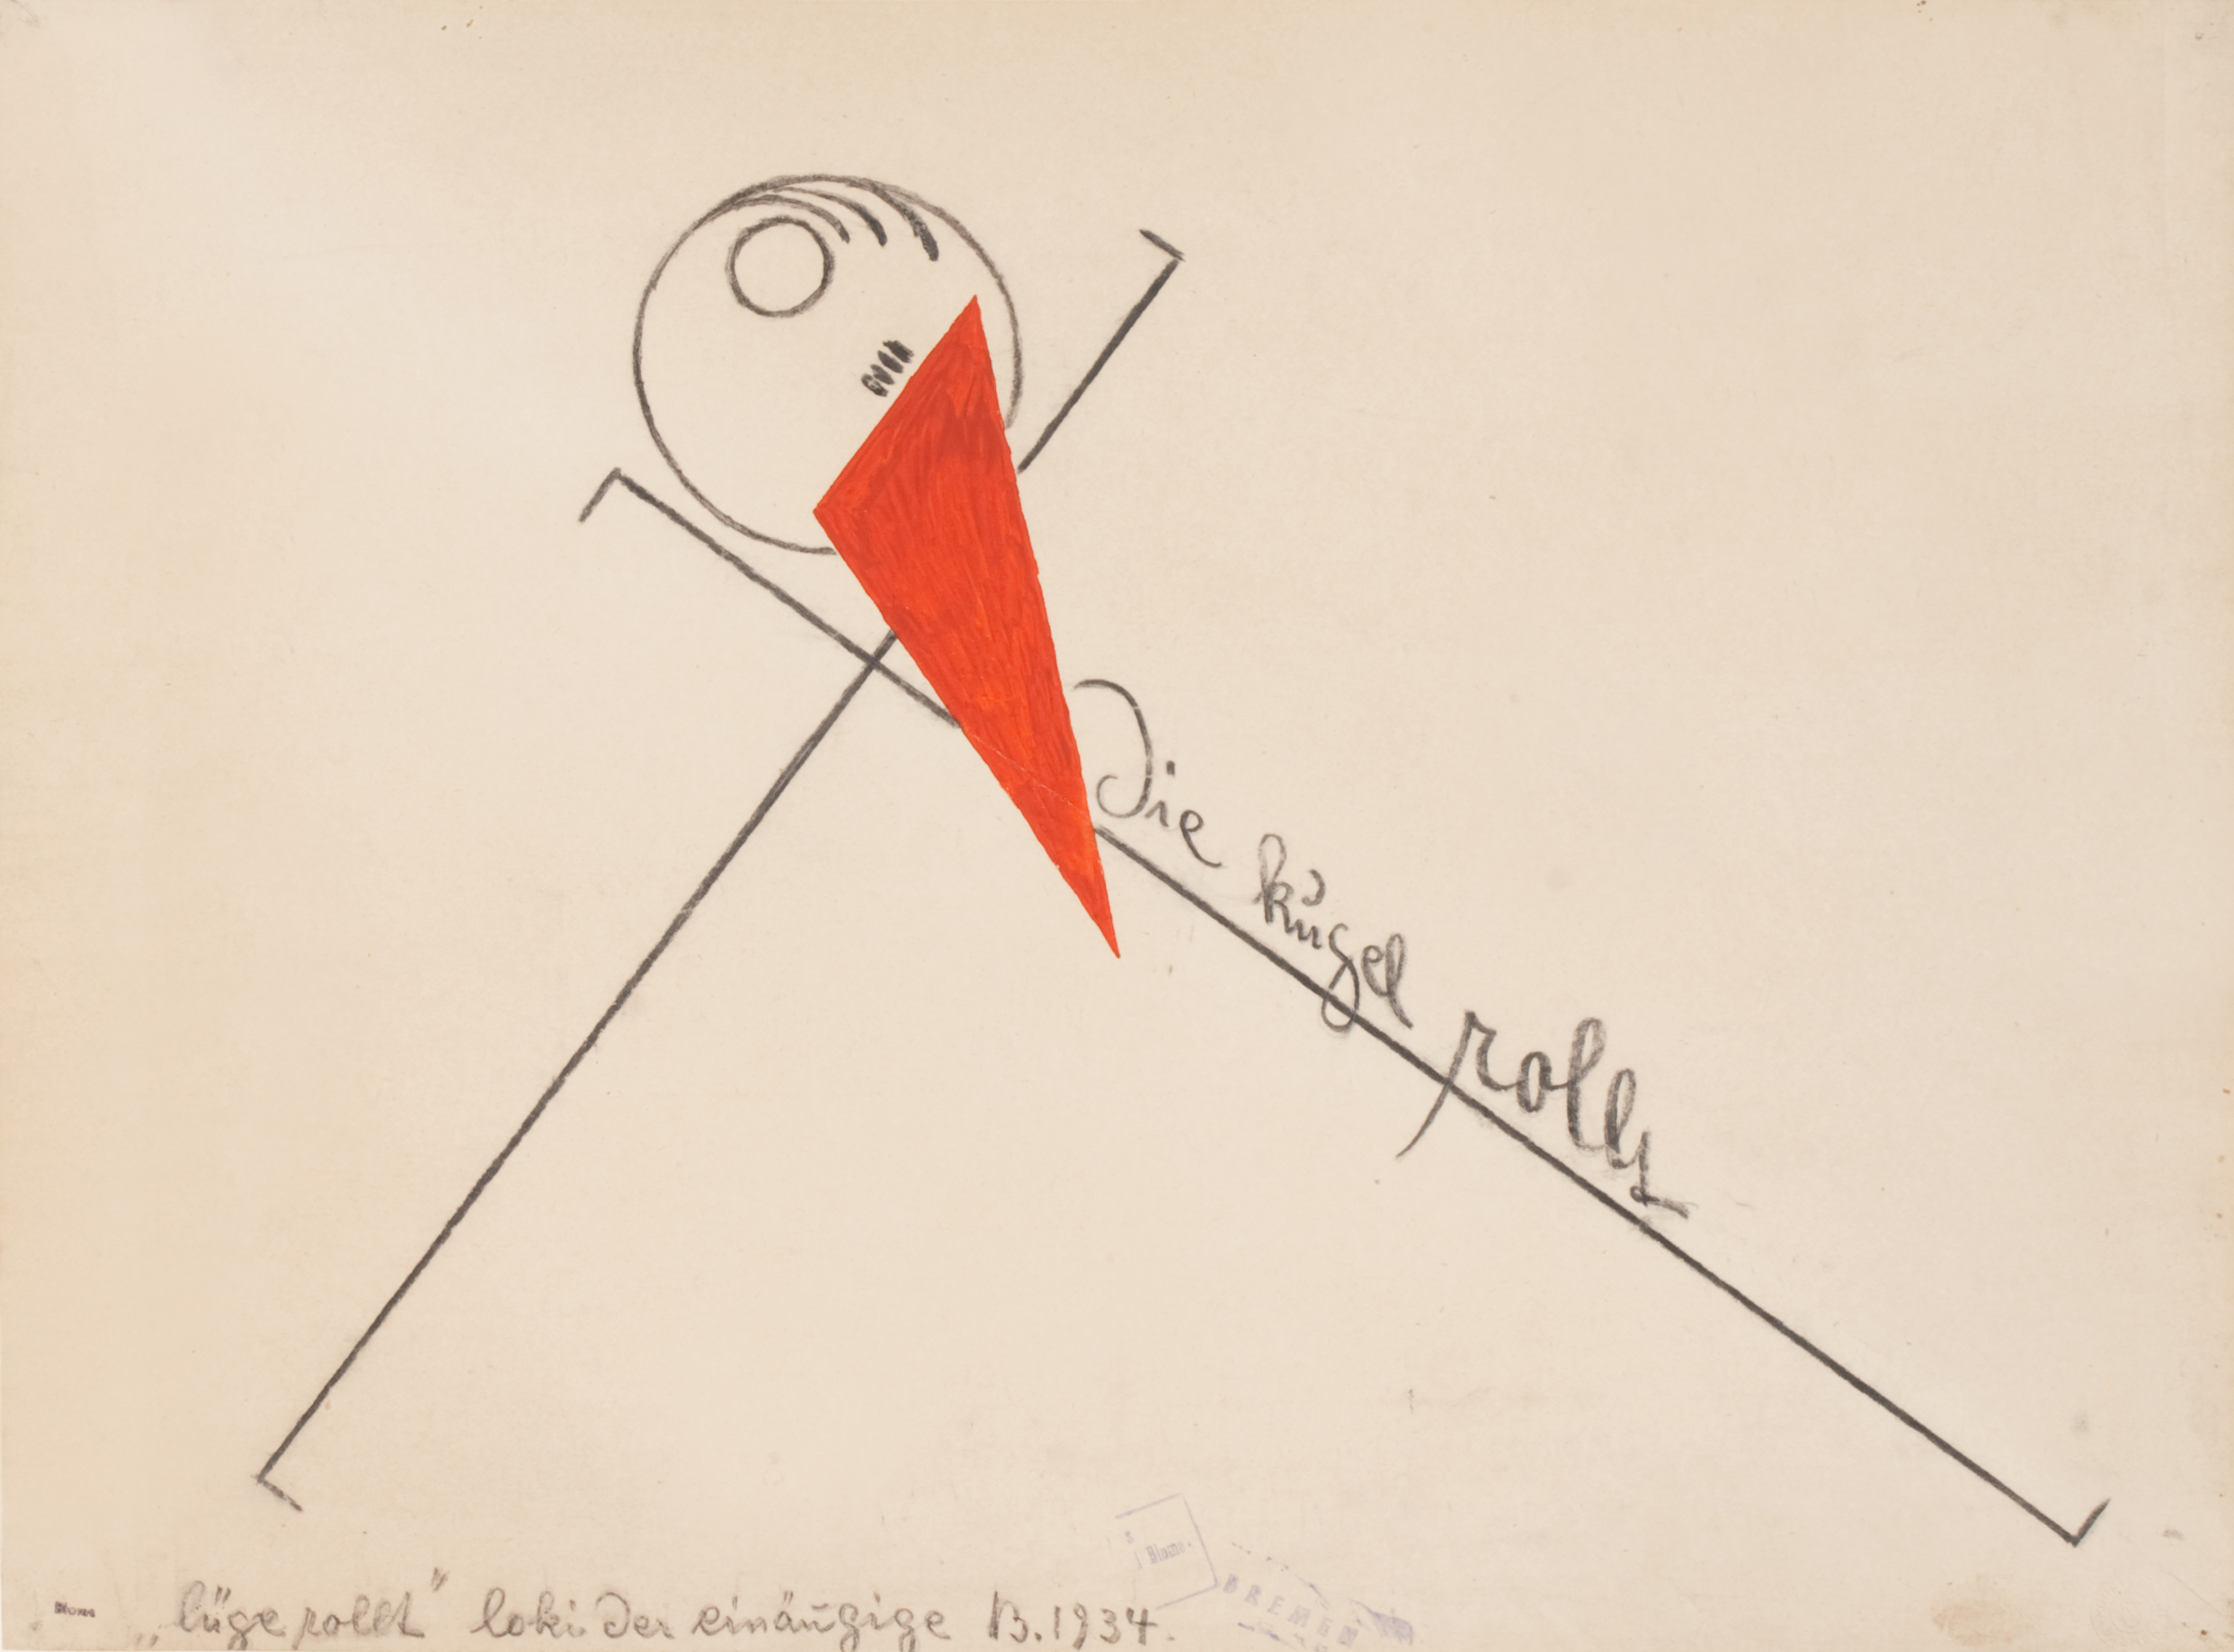 Arnold Blome, Die Kugel rollt, 1934, schwarze Kreide und rote Tusche auf Papier, 44,8 x 52,7 cm, Kunsthalle Bremen - Der Kunstverein Bremen, Foto: Karen Blindow